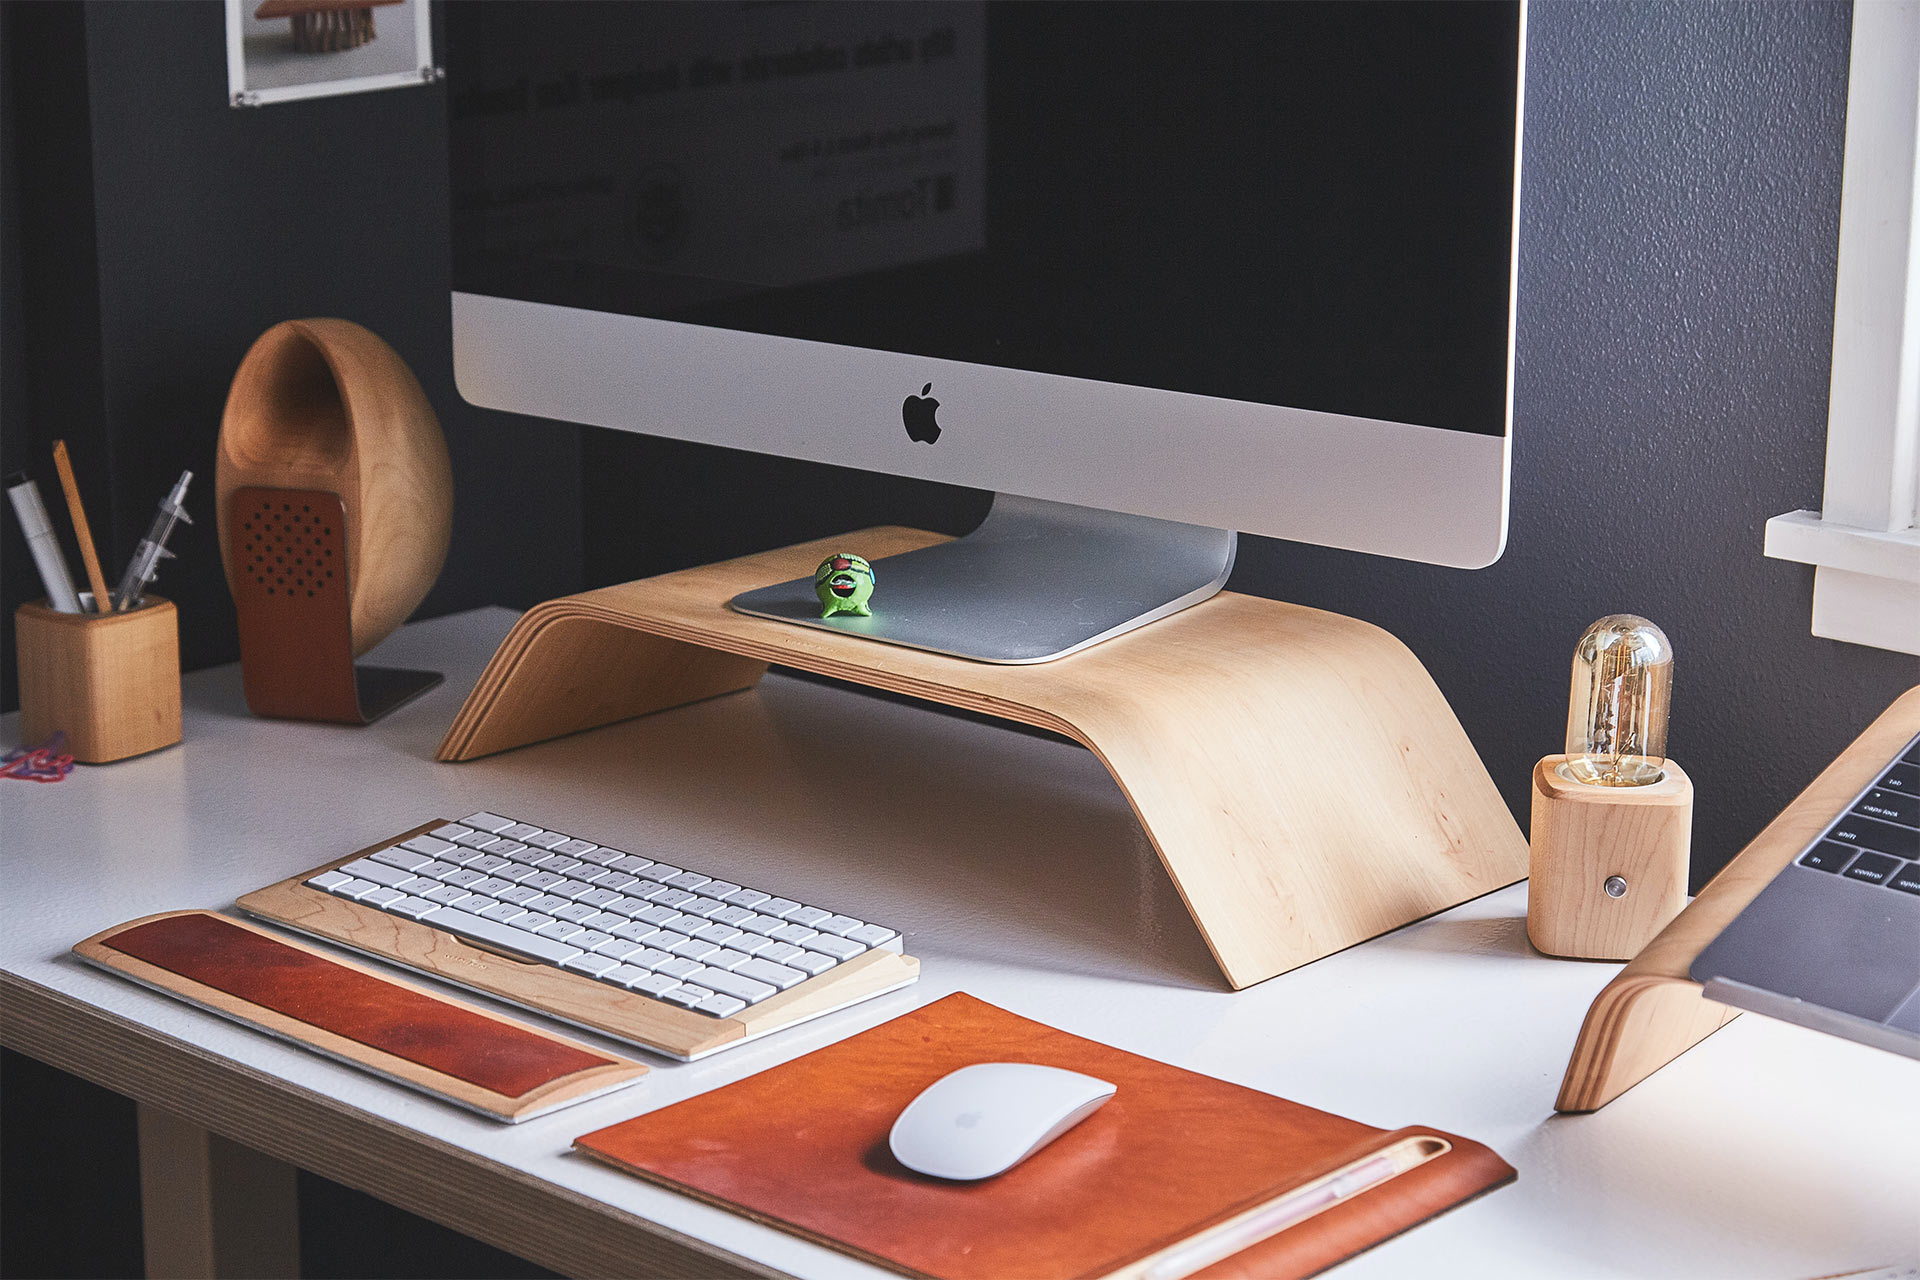 무선 키보드, 마우스와 함께 책상 위 목재 스탠드에 놓여 있는 iMac